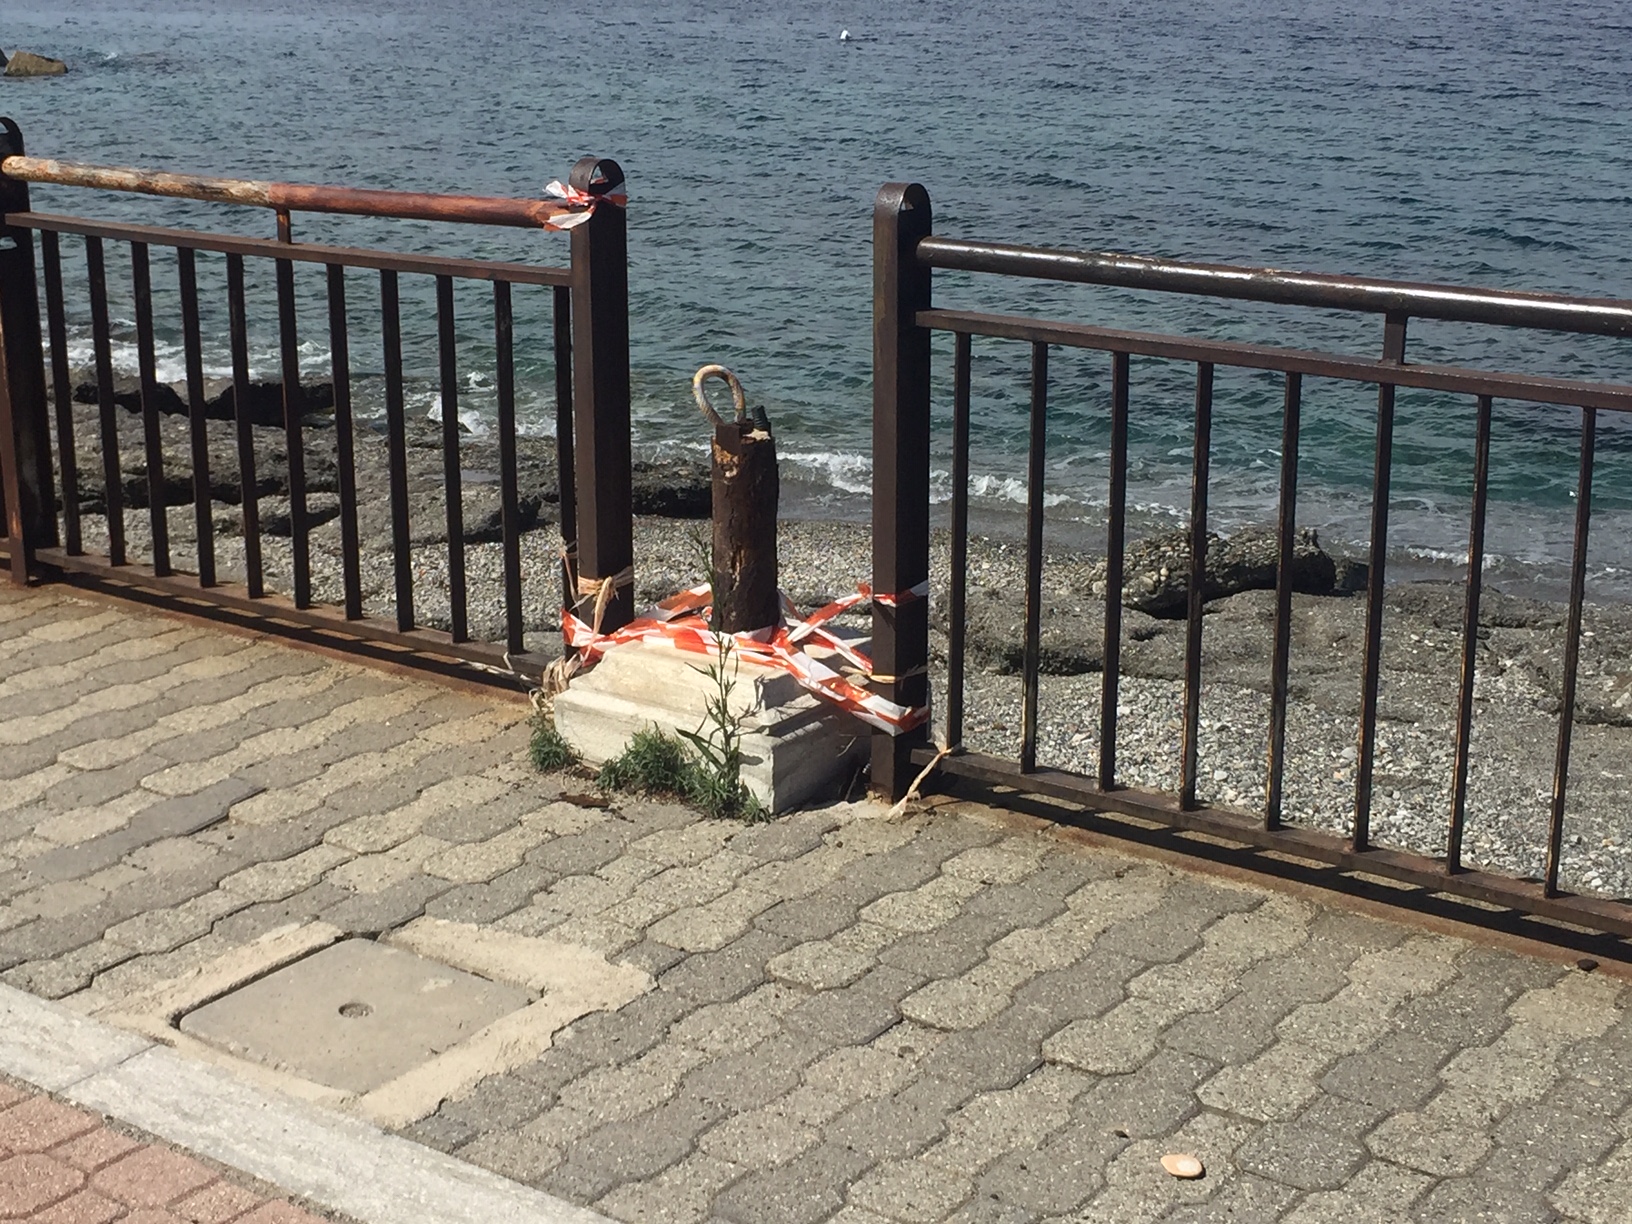 A Reggio Calabria per le ferie: «Ho ritrovato la mia Lazzaro abbandonata»